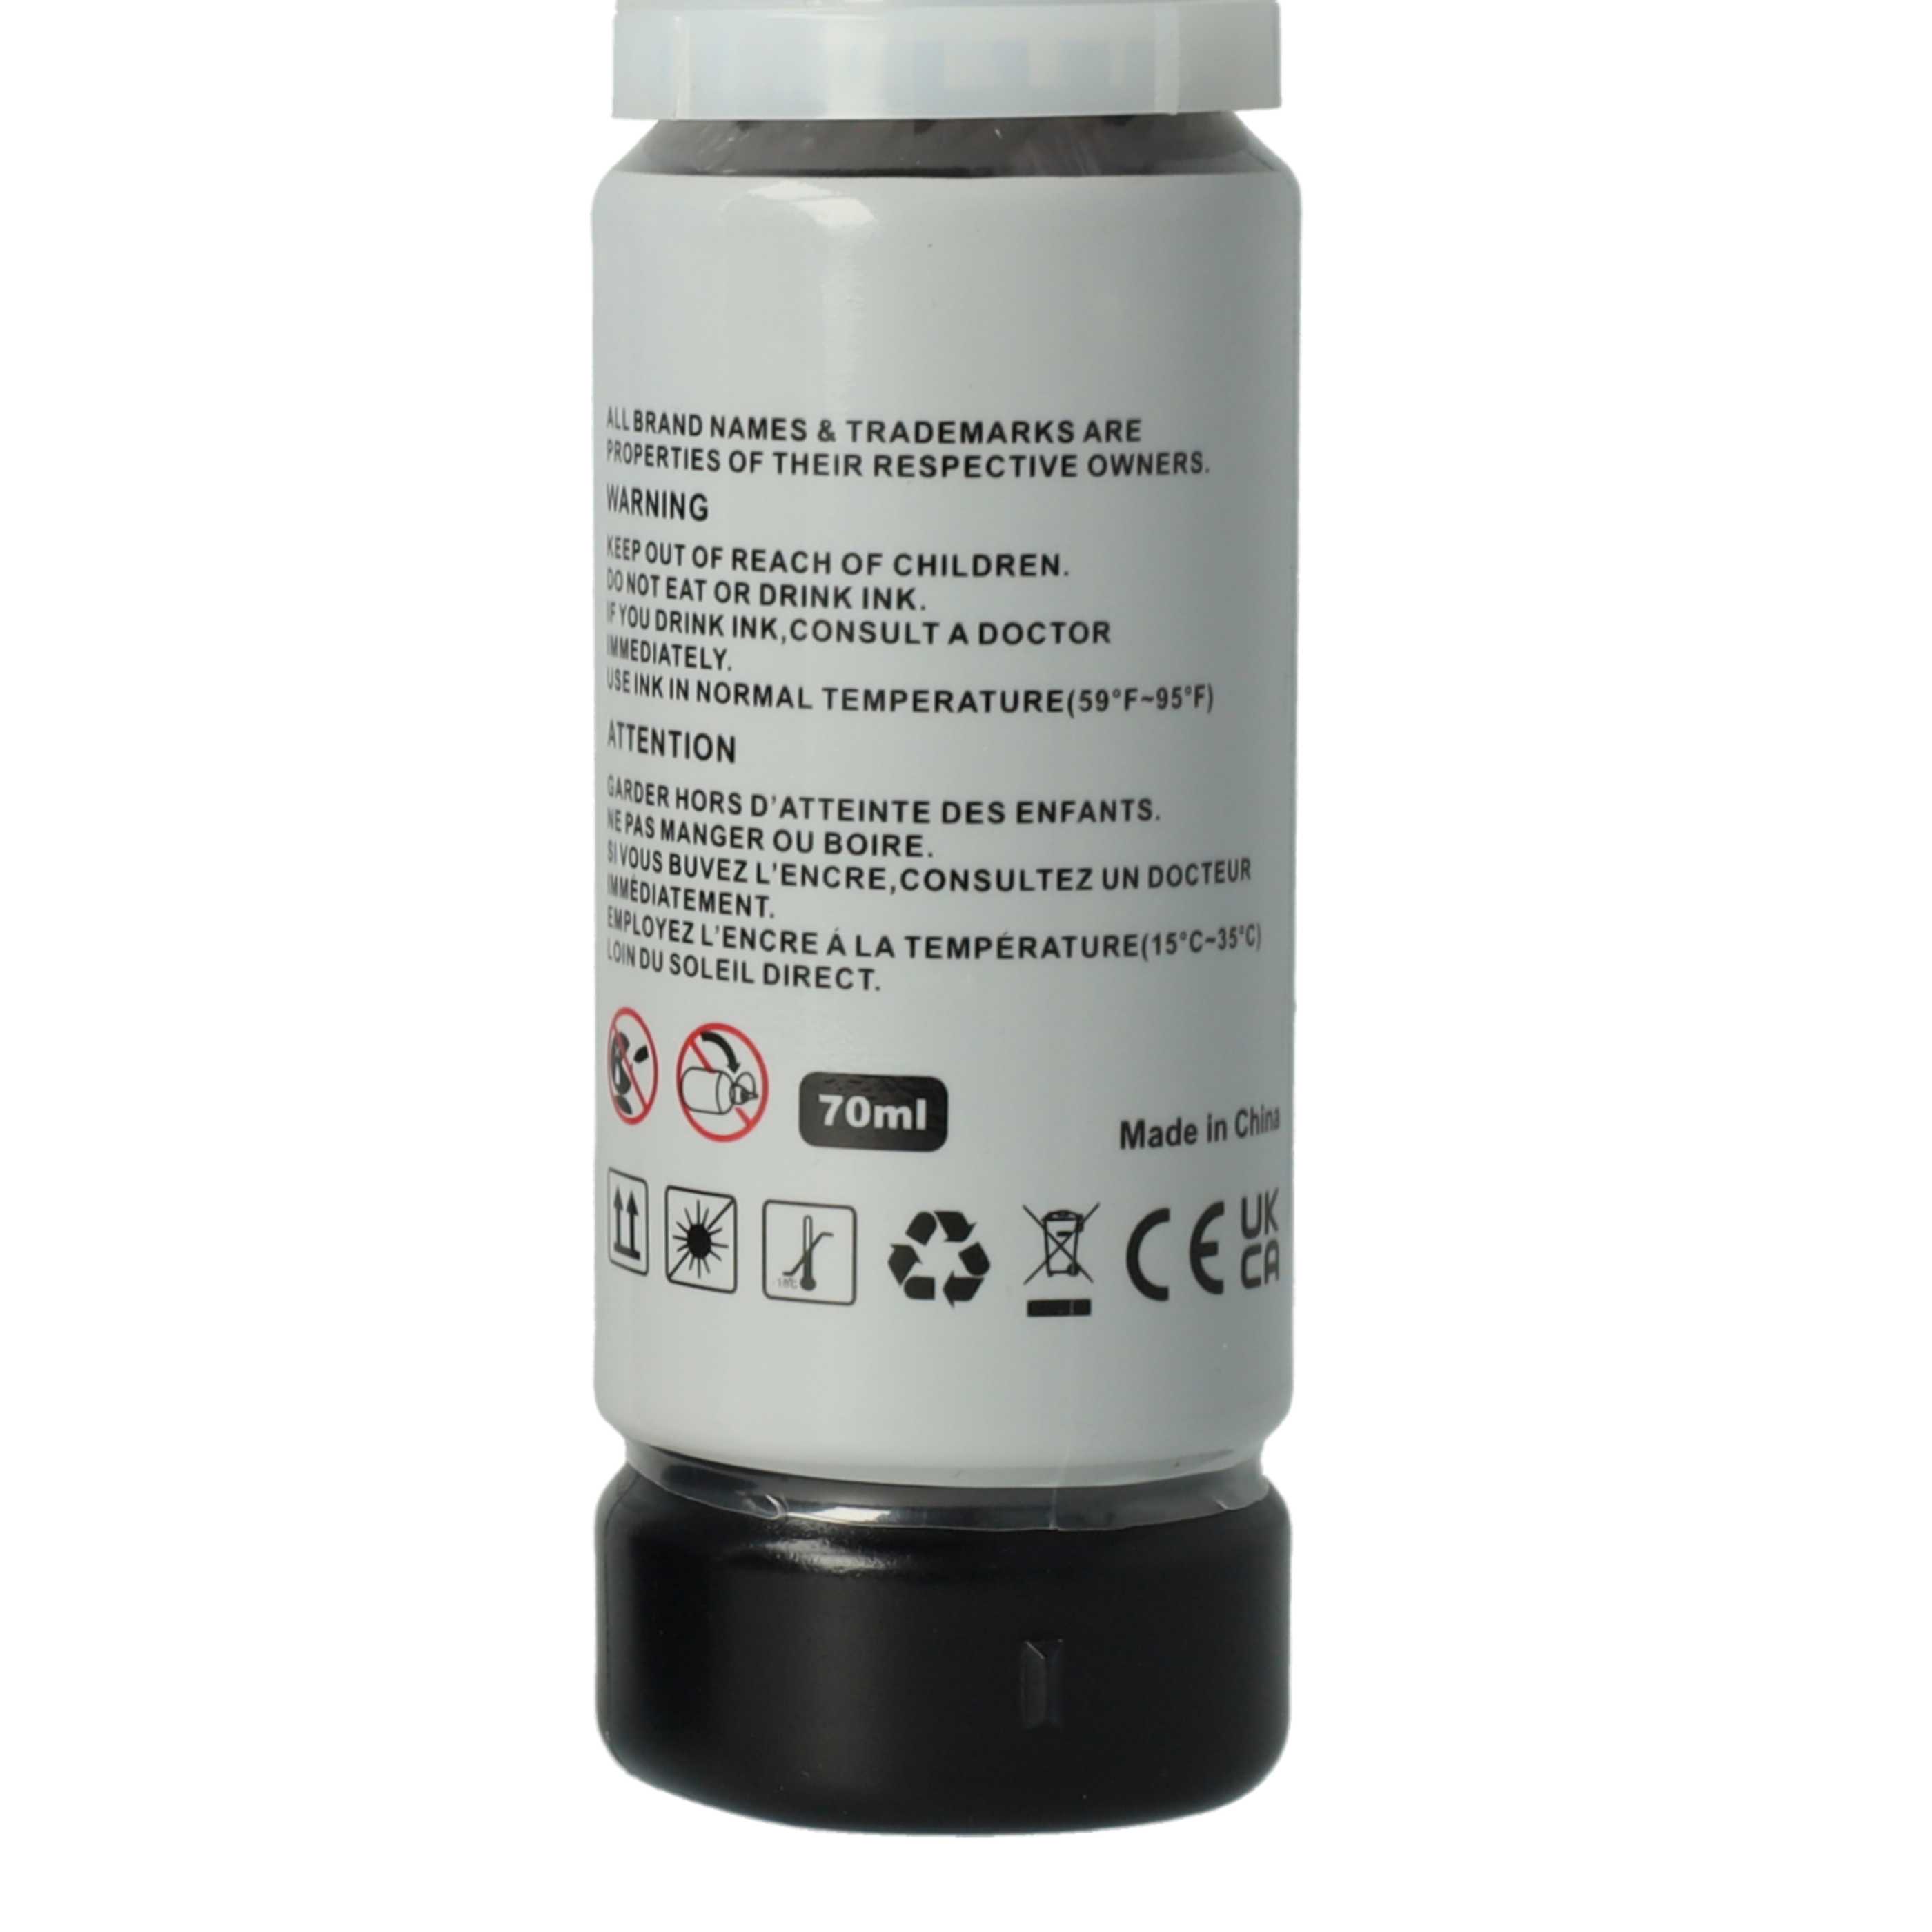 Ricarica inchiostro nero dye based sostituisce Epson 102 black dye per stampante da 70ml